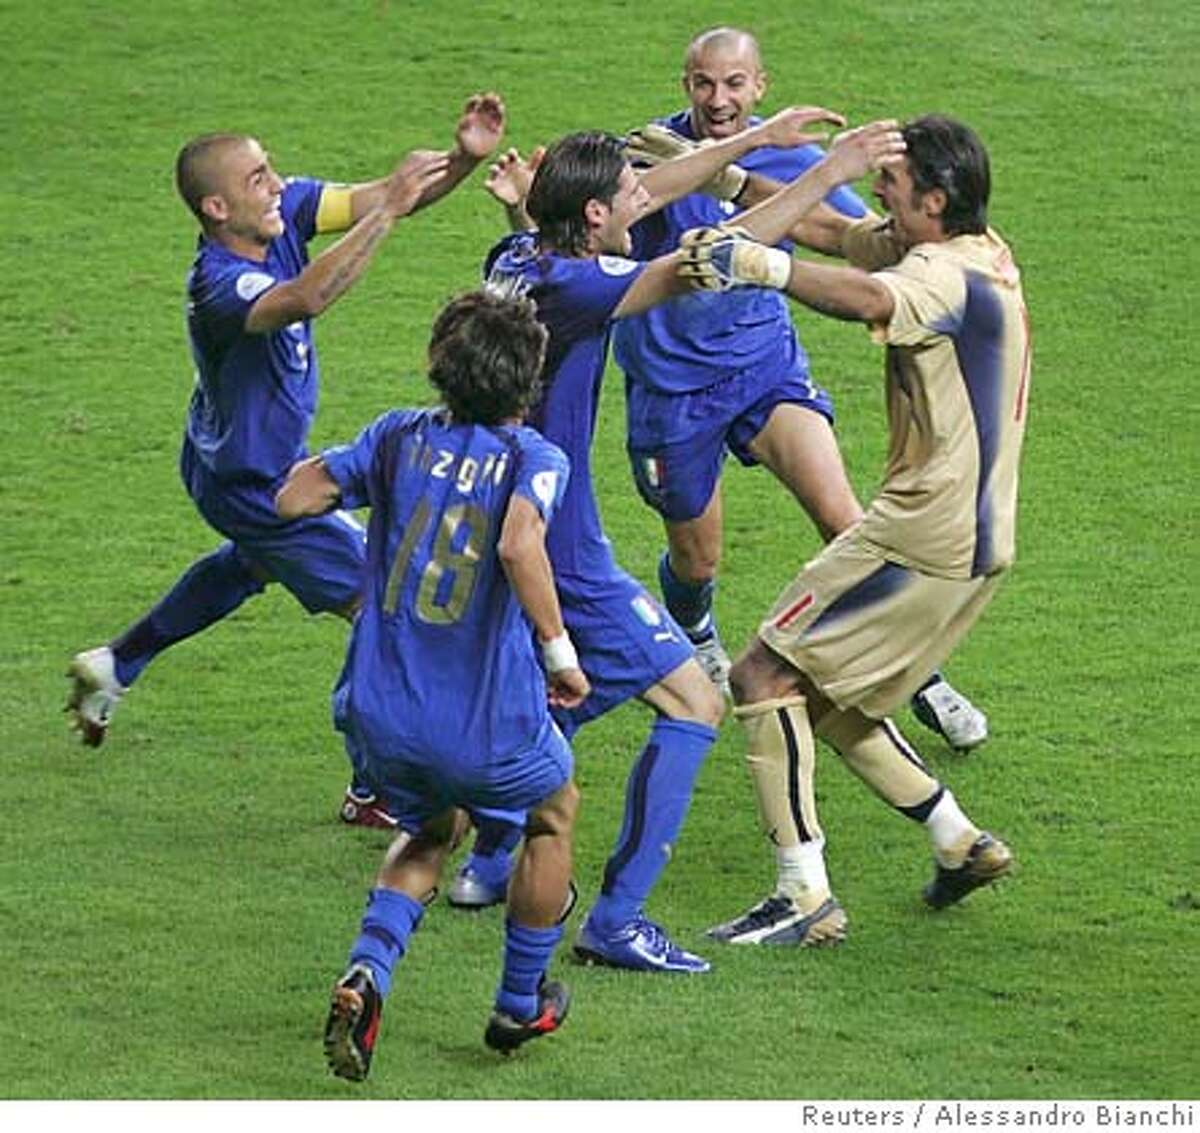 Италия франция составы. Сборная Италии 2006. Италия чемпион 2006. Состав сборной Италии на ЧМ 2006. Сборная Италии по футболу 2006.